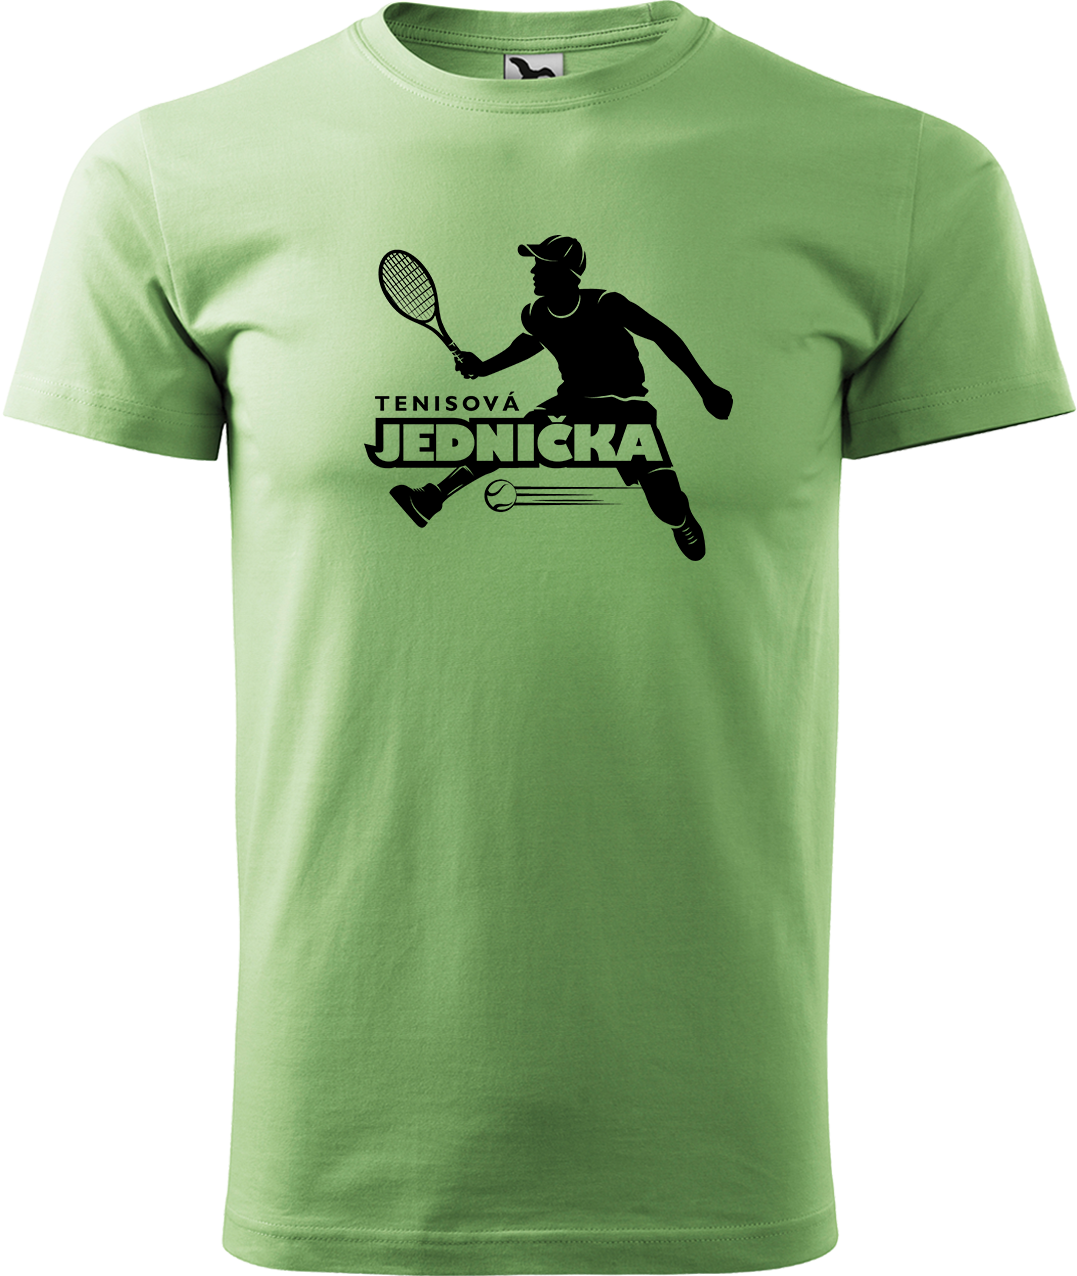 Tenisové tričko - Tenisová jednička Velikost: 2XL, Barva: Trávově zelená (39)